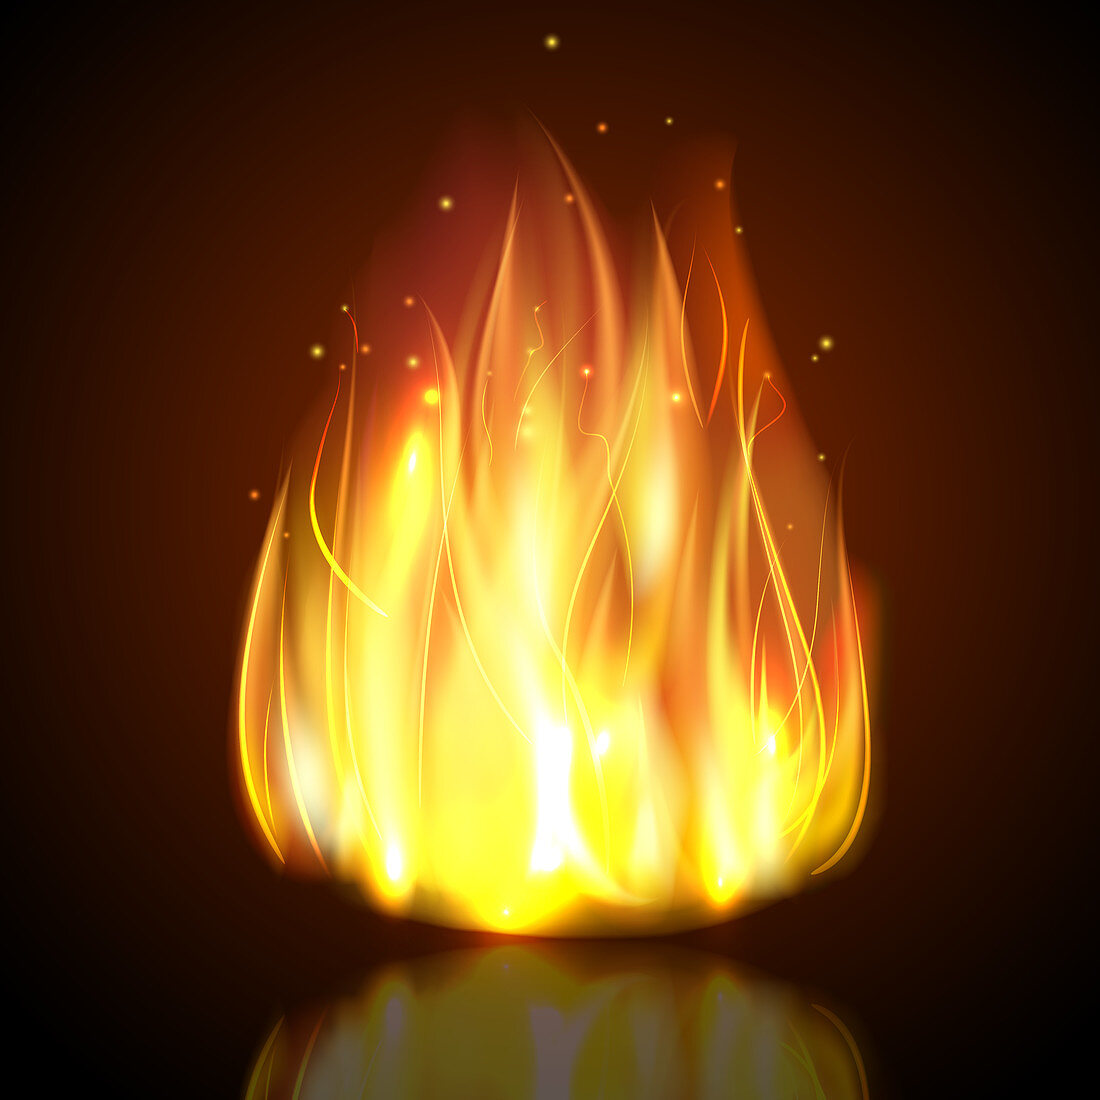 Campfire, illustration